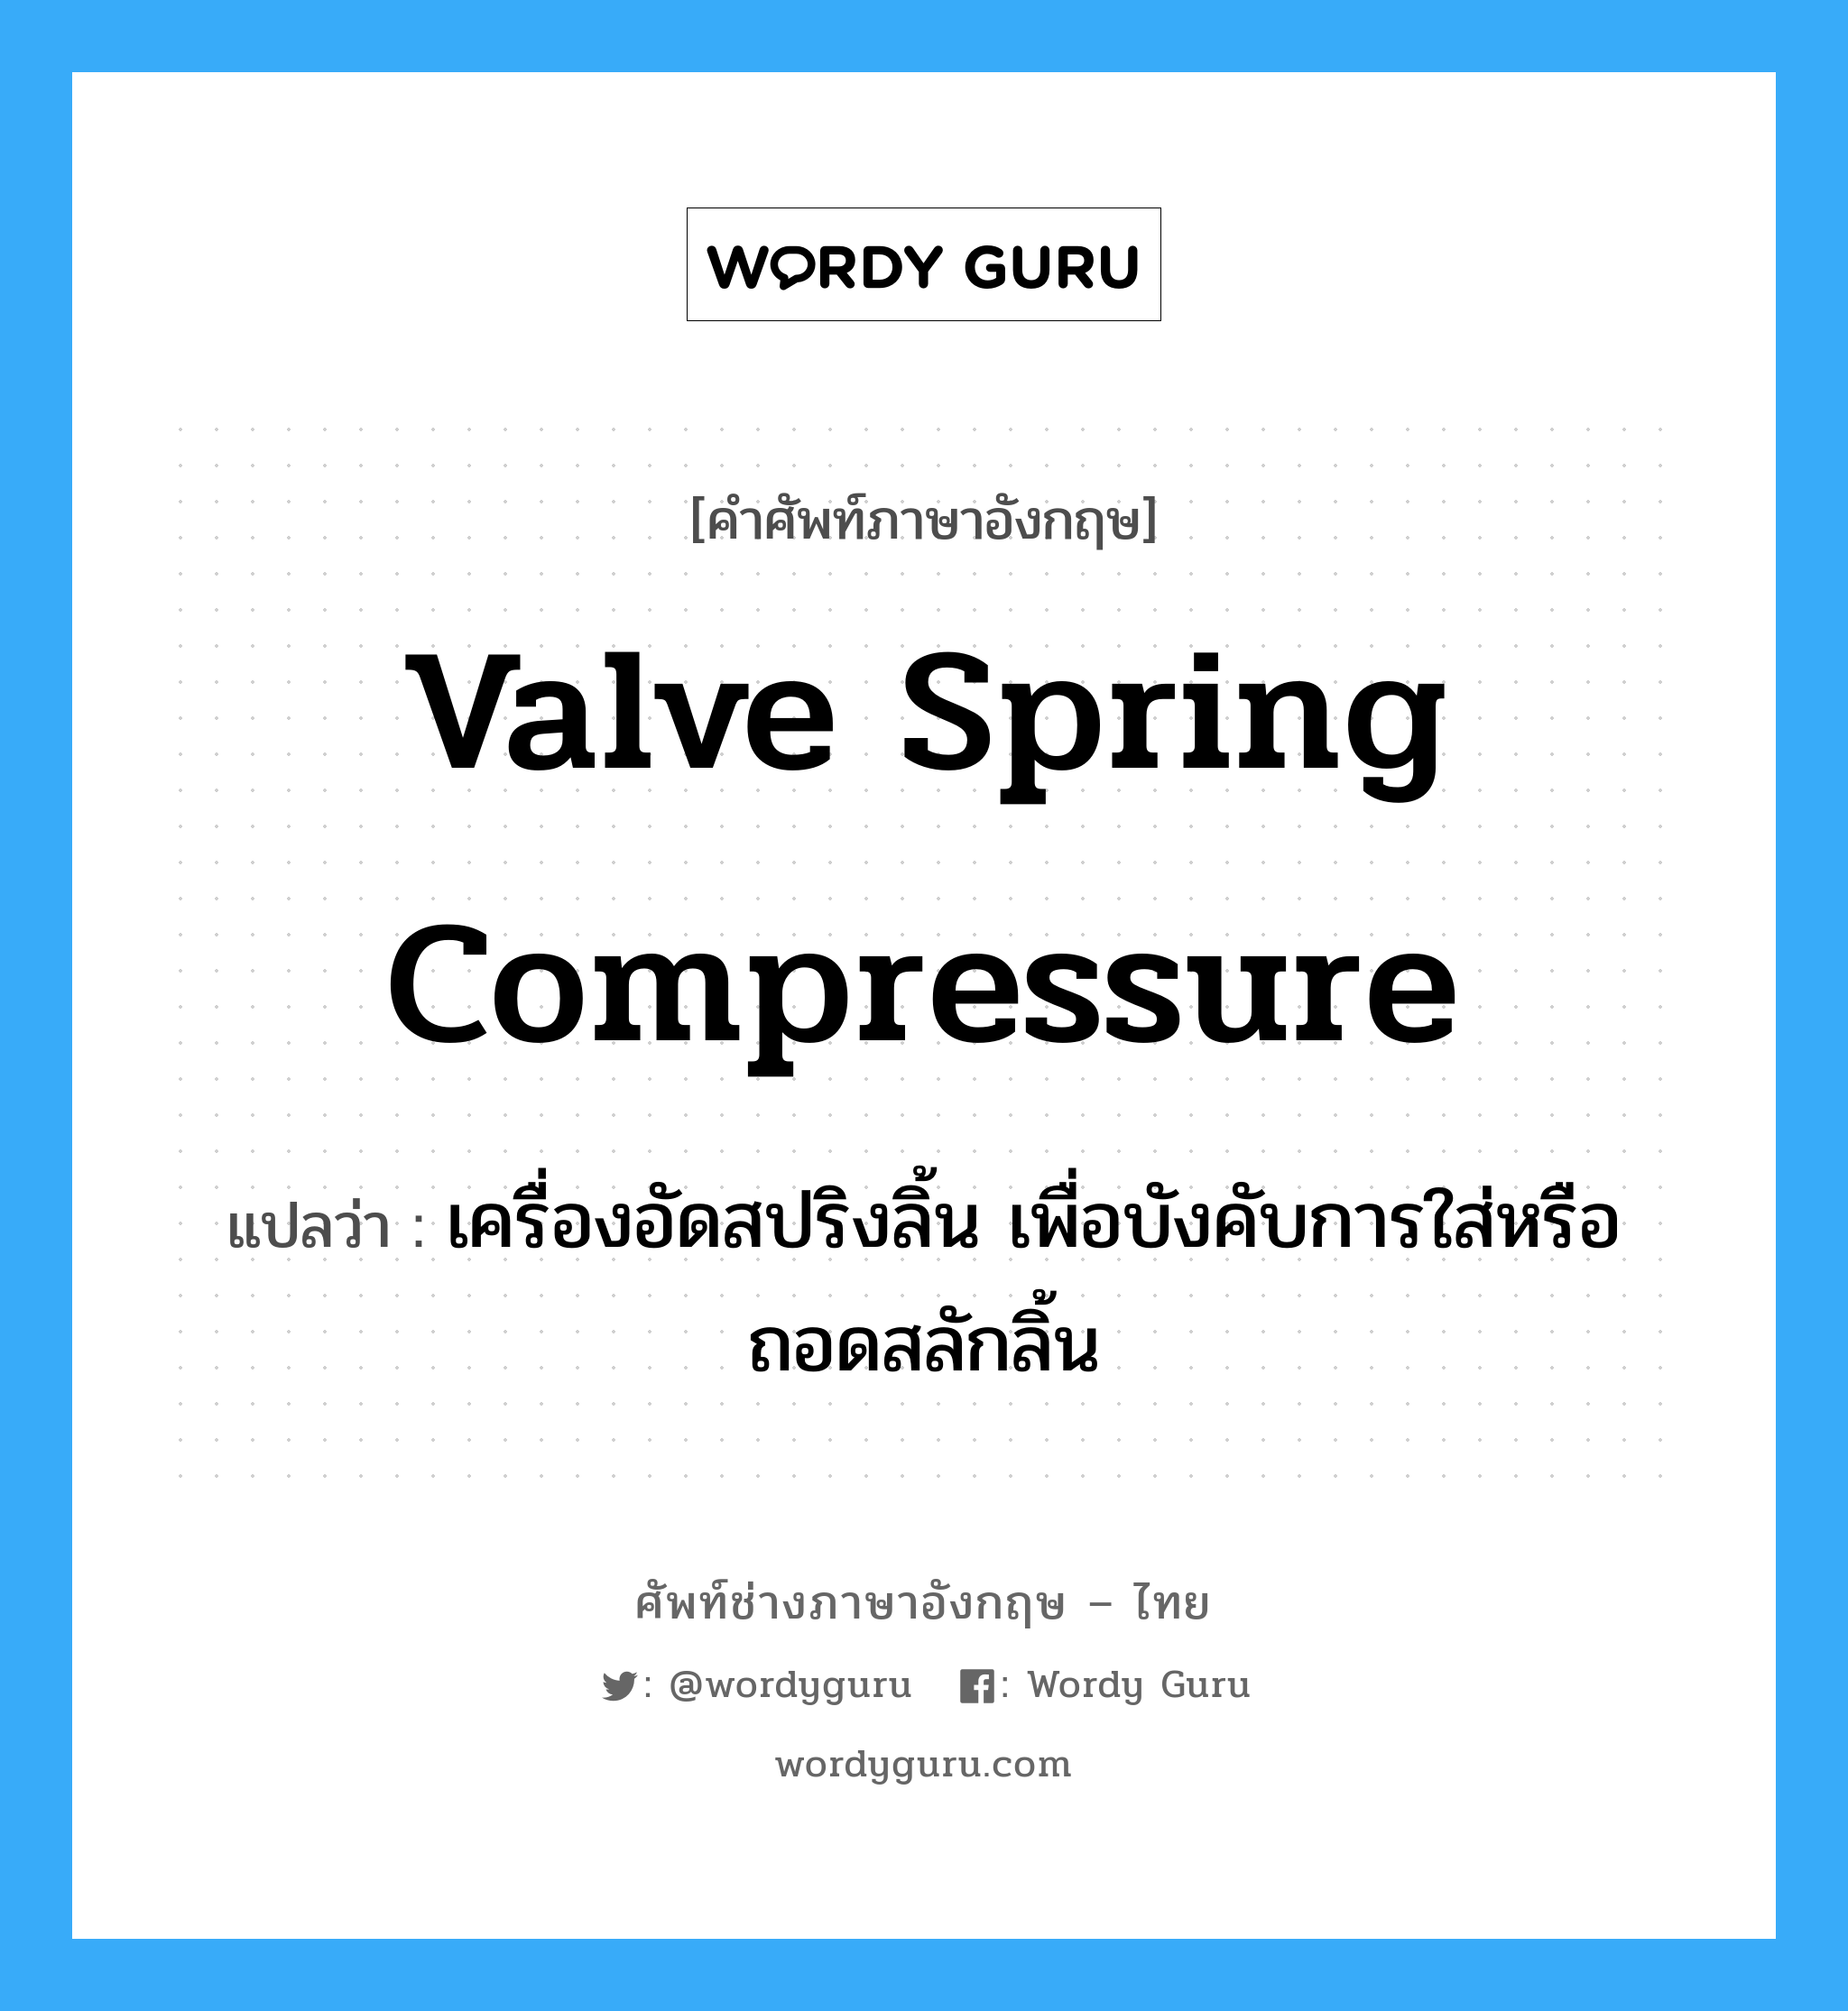 valve spring compressure แปลว่า?, คำศัพท์ช่างภาษาอังกฤษ - ไทย valve spring compressure คำศัพท์ภาษาอังกฤษ valve spring compressure แปลว่า เครื่องอัดสปริงลิ้น เพื่อบังคับการใส่หรือถอดสลักลิ้น